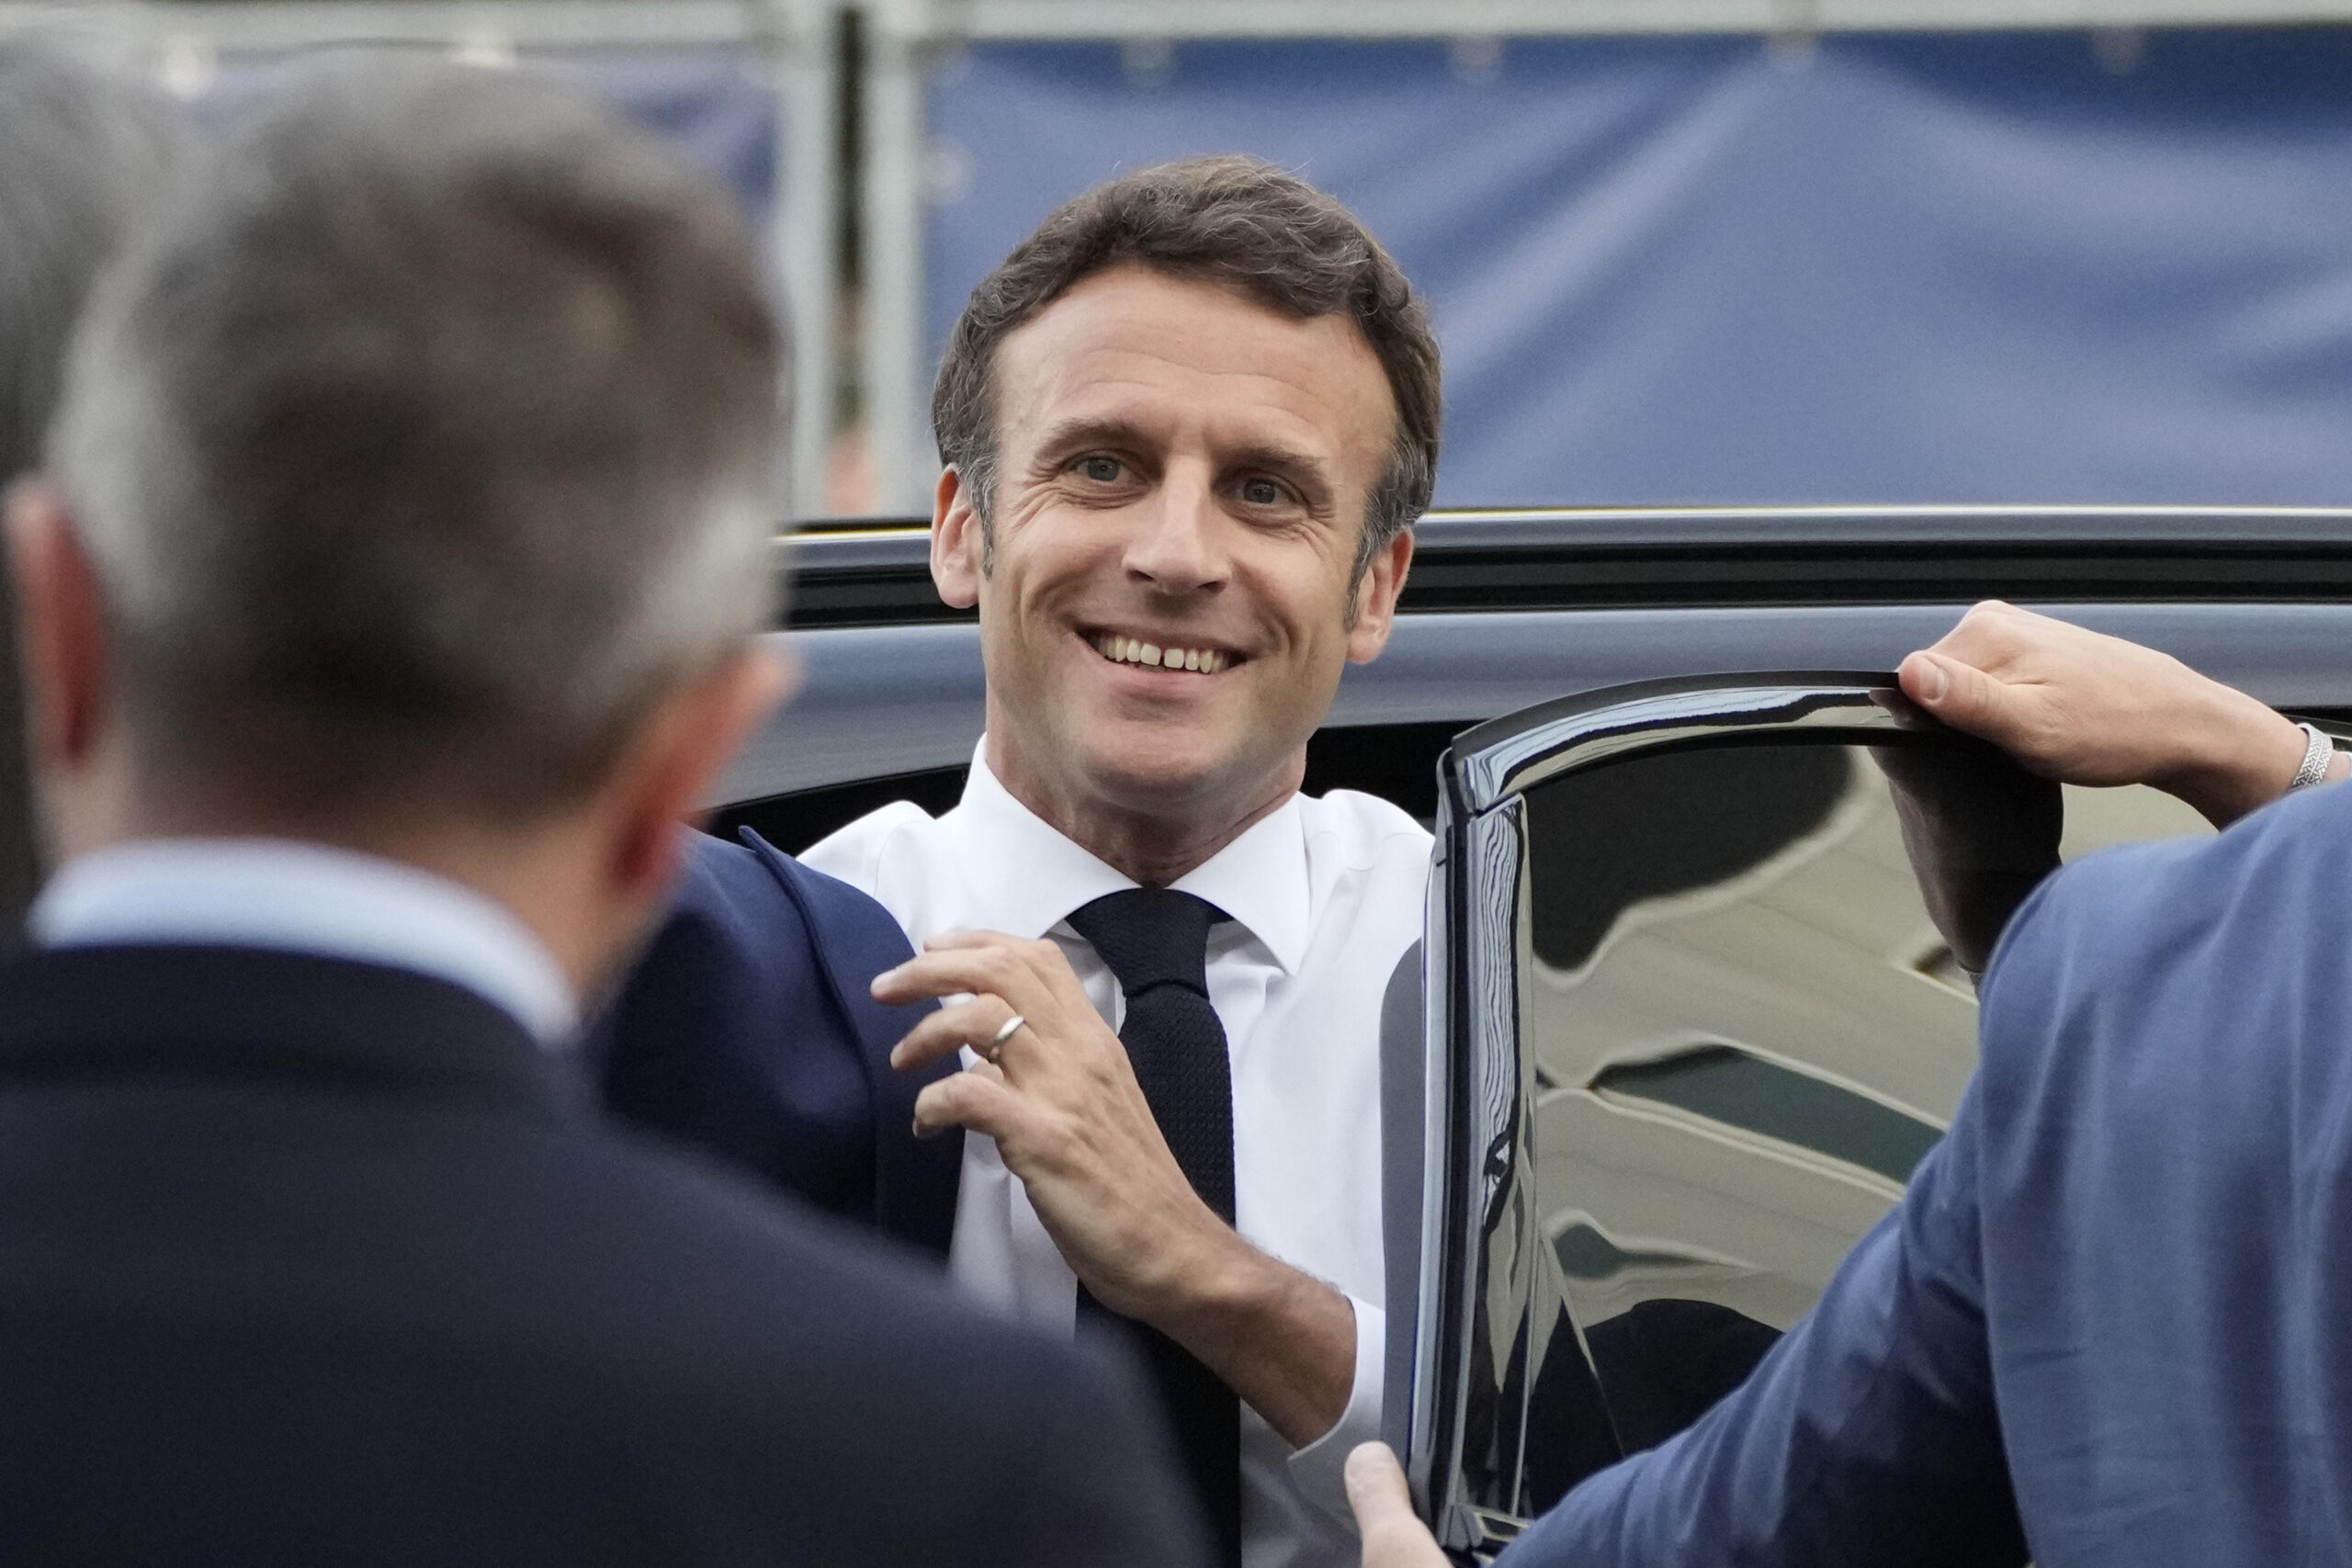 Il dibattito in tv tra Emmanuel Macron e Marine Le Pen. Oltre 15 milioni di francesi hanno seguito il confronto